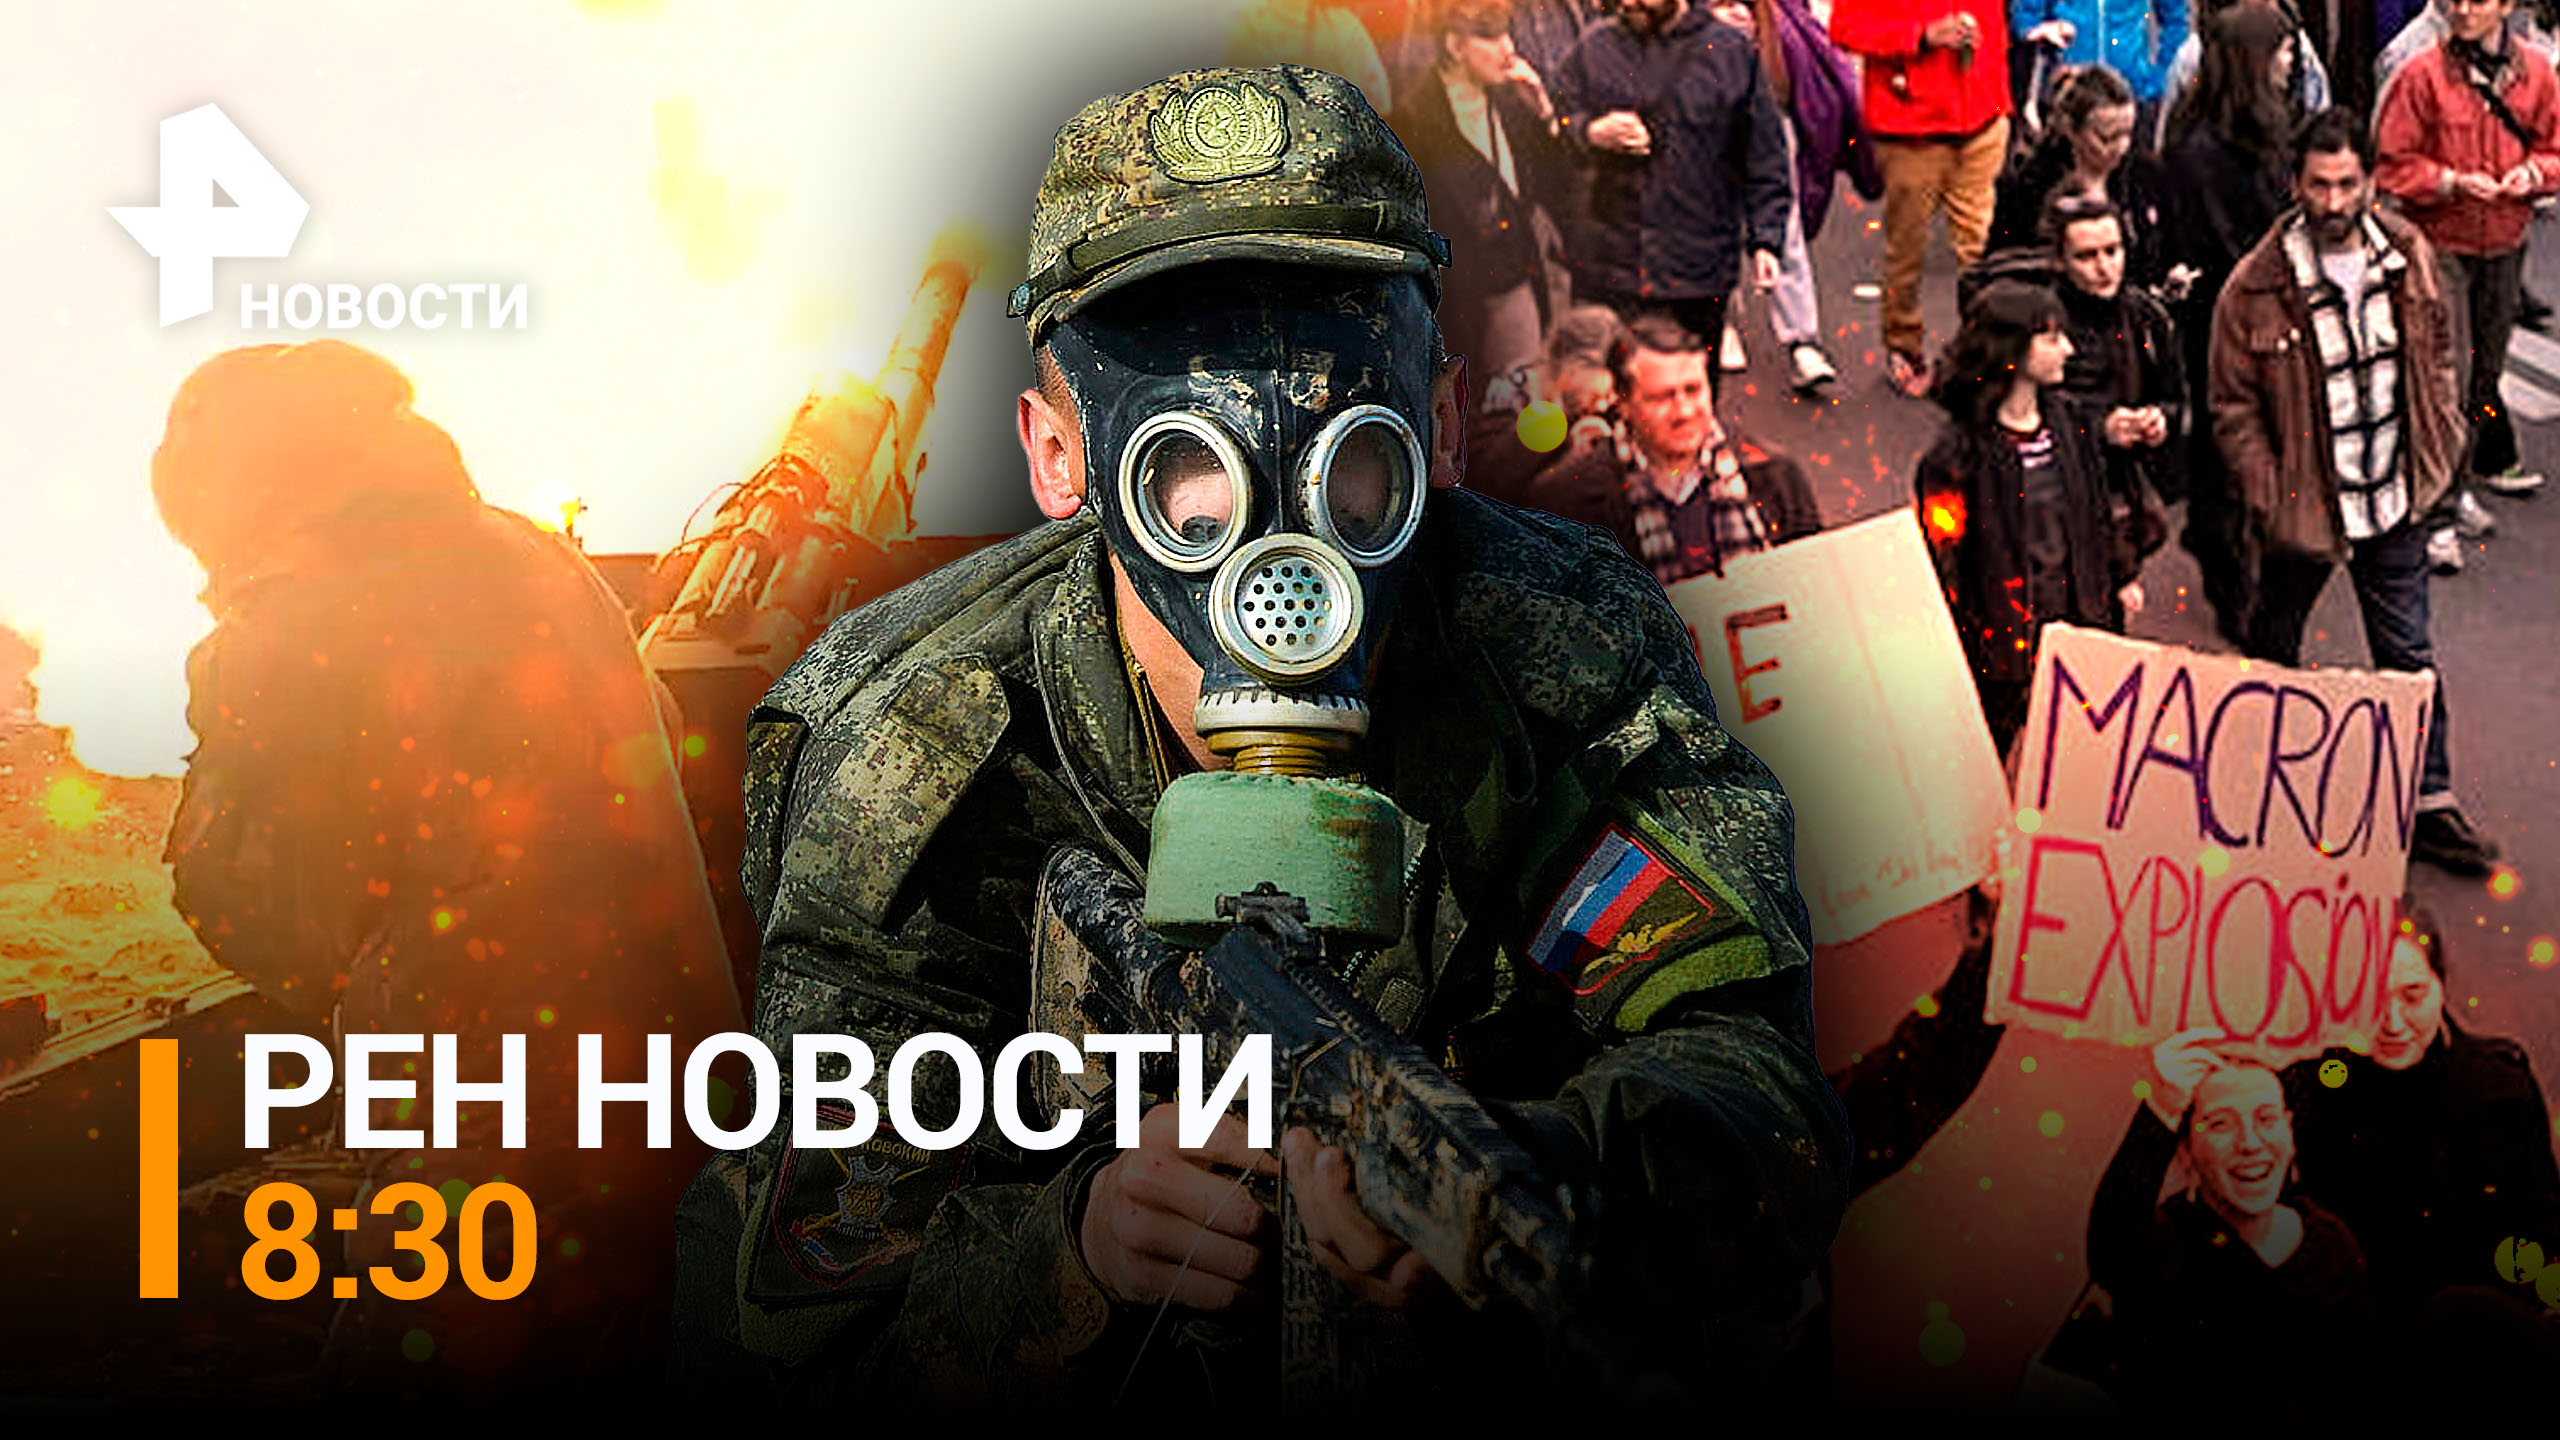 Российские артиллеристы под Авдеевкой теснят украинских боевиков / РЕН Новости 8:30 от 23.03